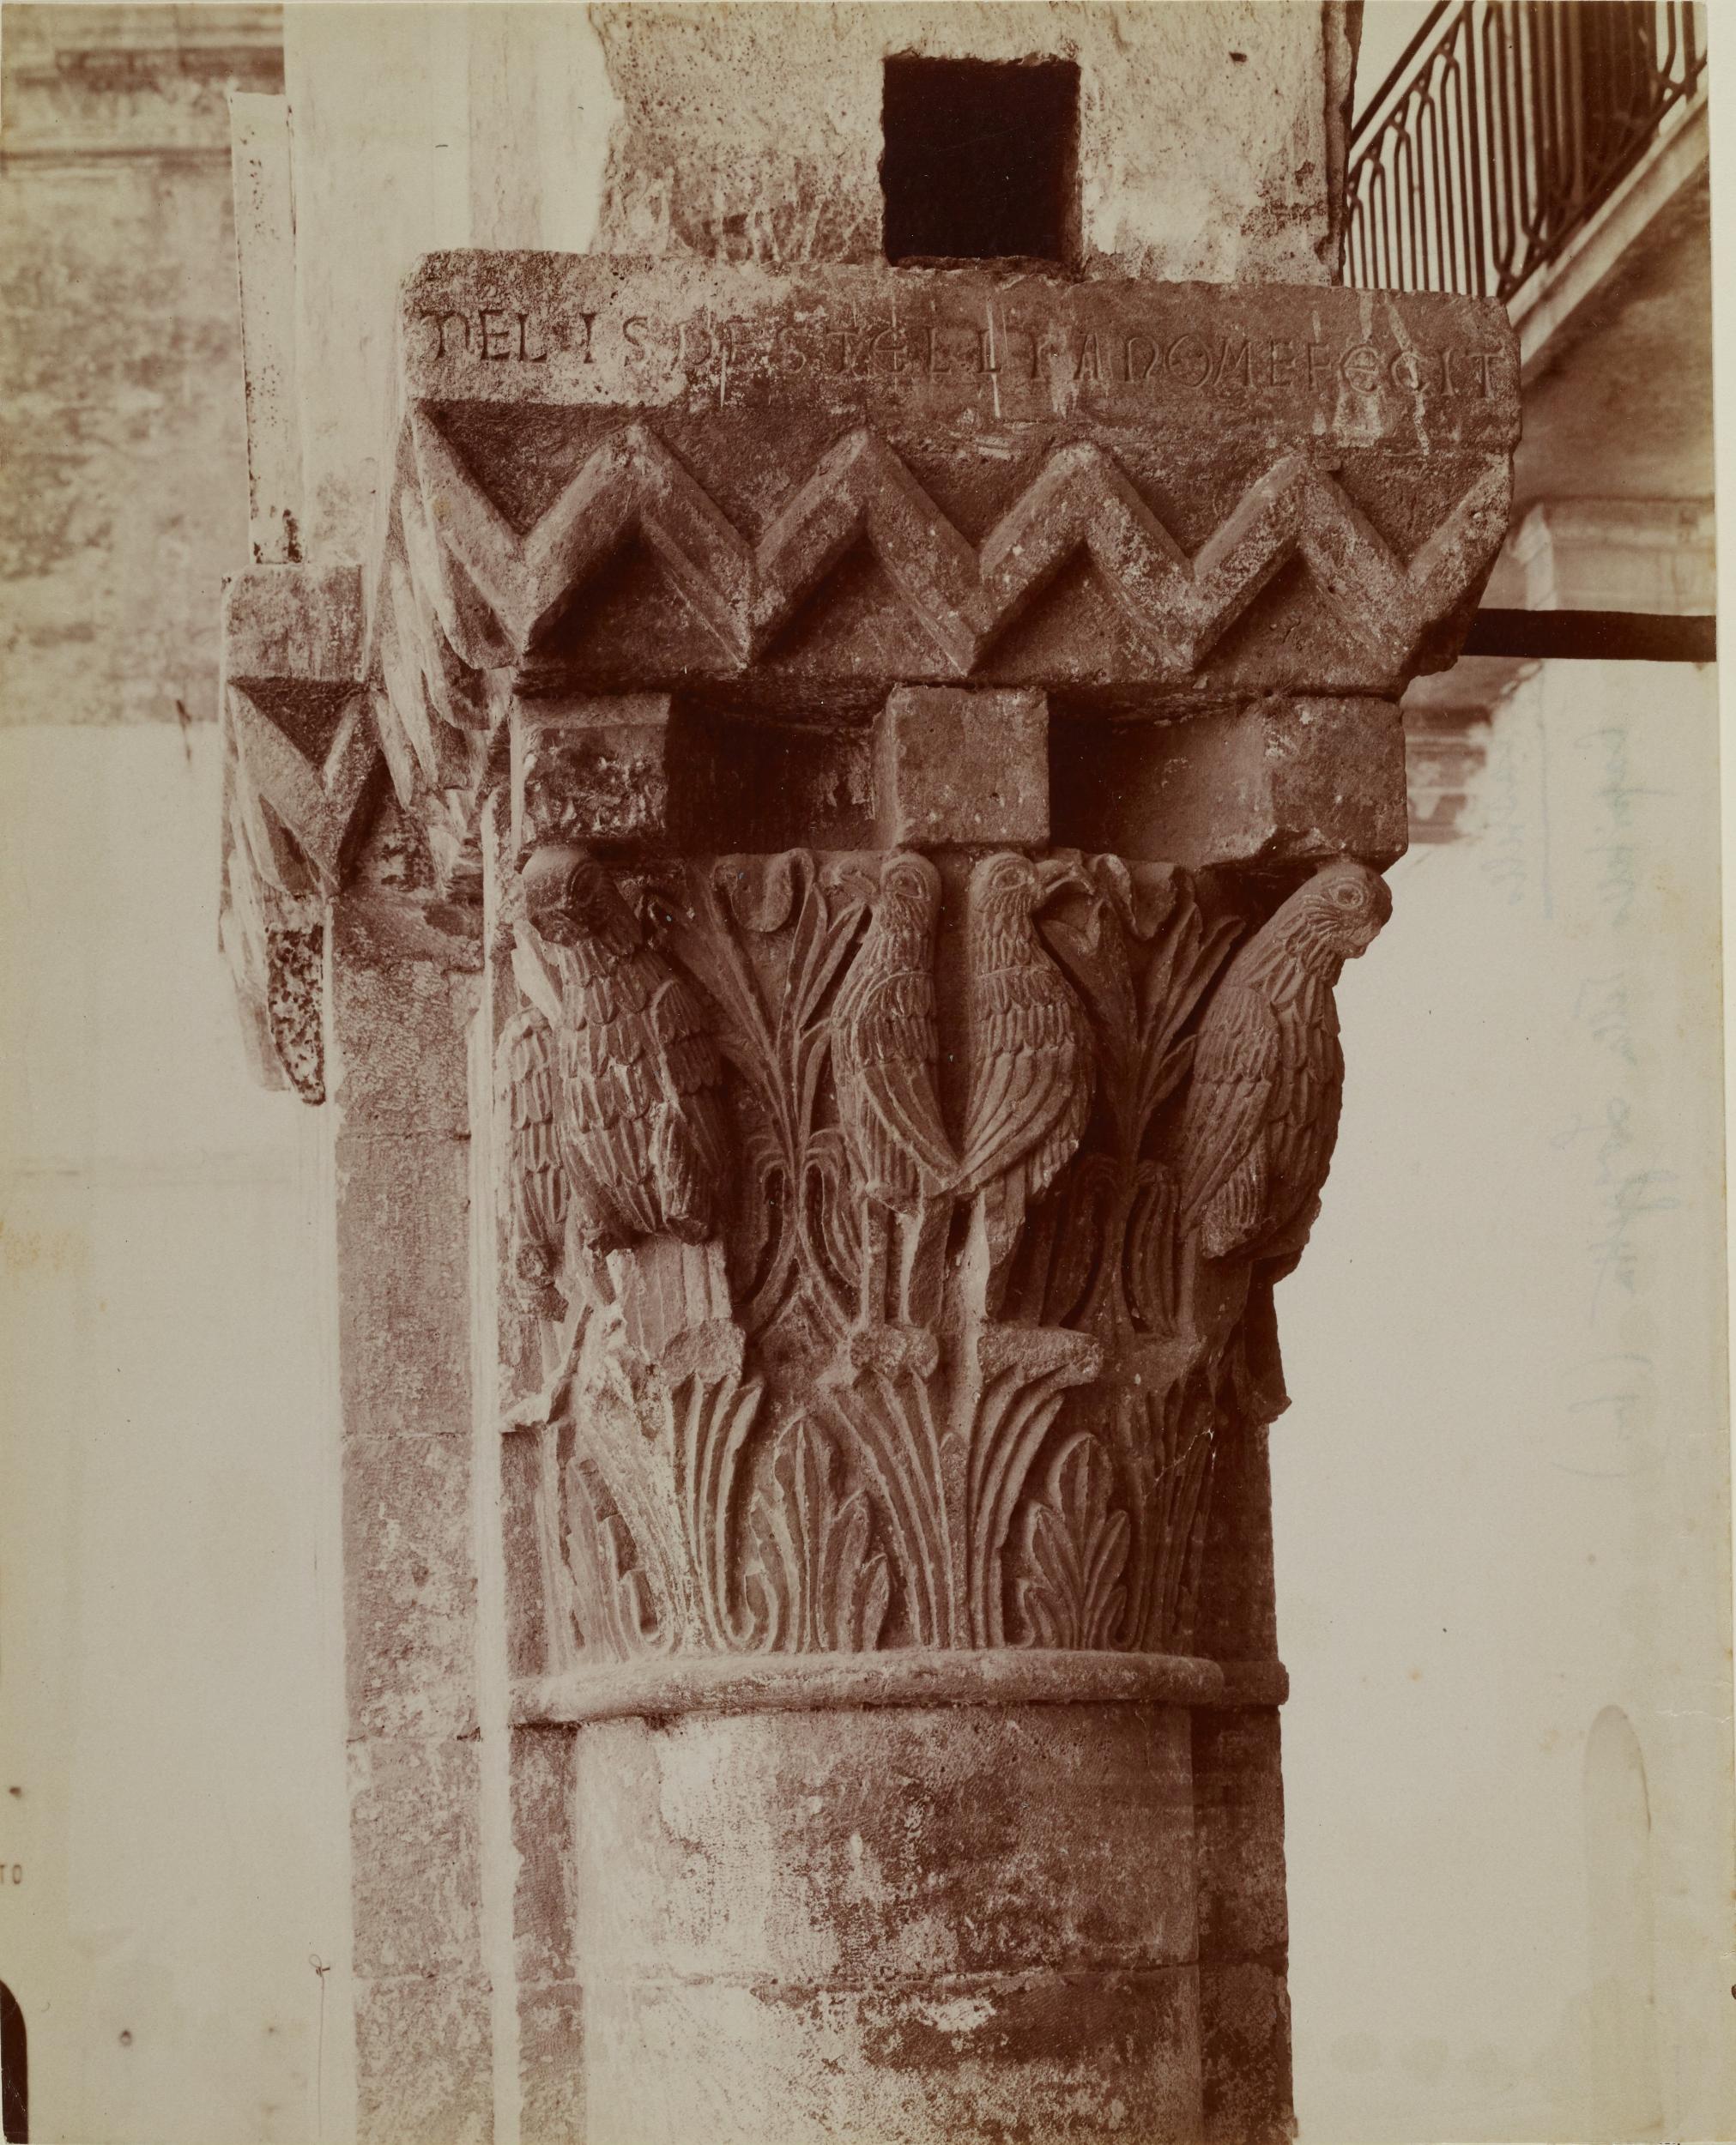 Fotografo non identificato, Bari - Castello Svevo, loggia cortile sud-est, capitello con pulvino, 1876-1900, gelatina ai sali d'argento/carta, MPI6023073A